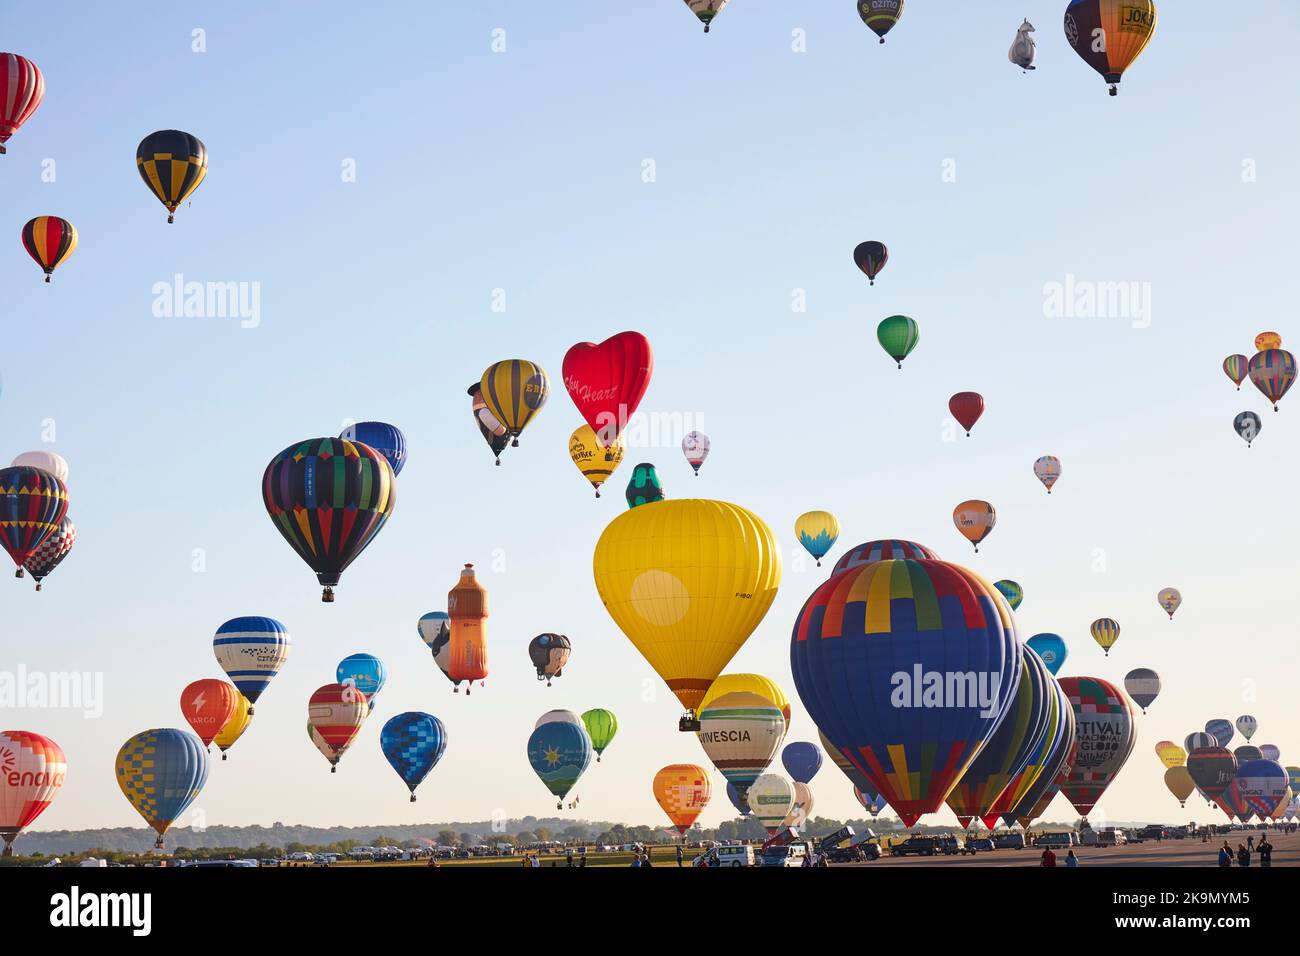 Festival de ballon d'air chaud en France Banque D'Images